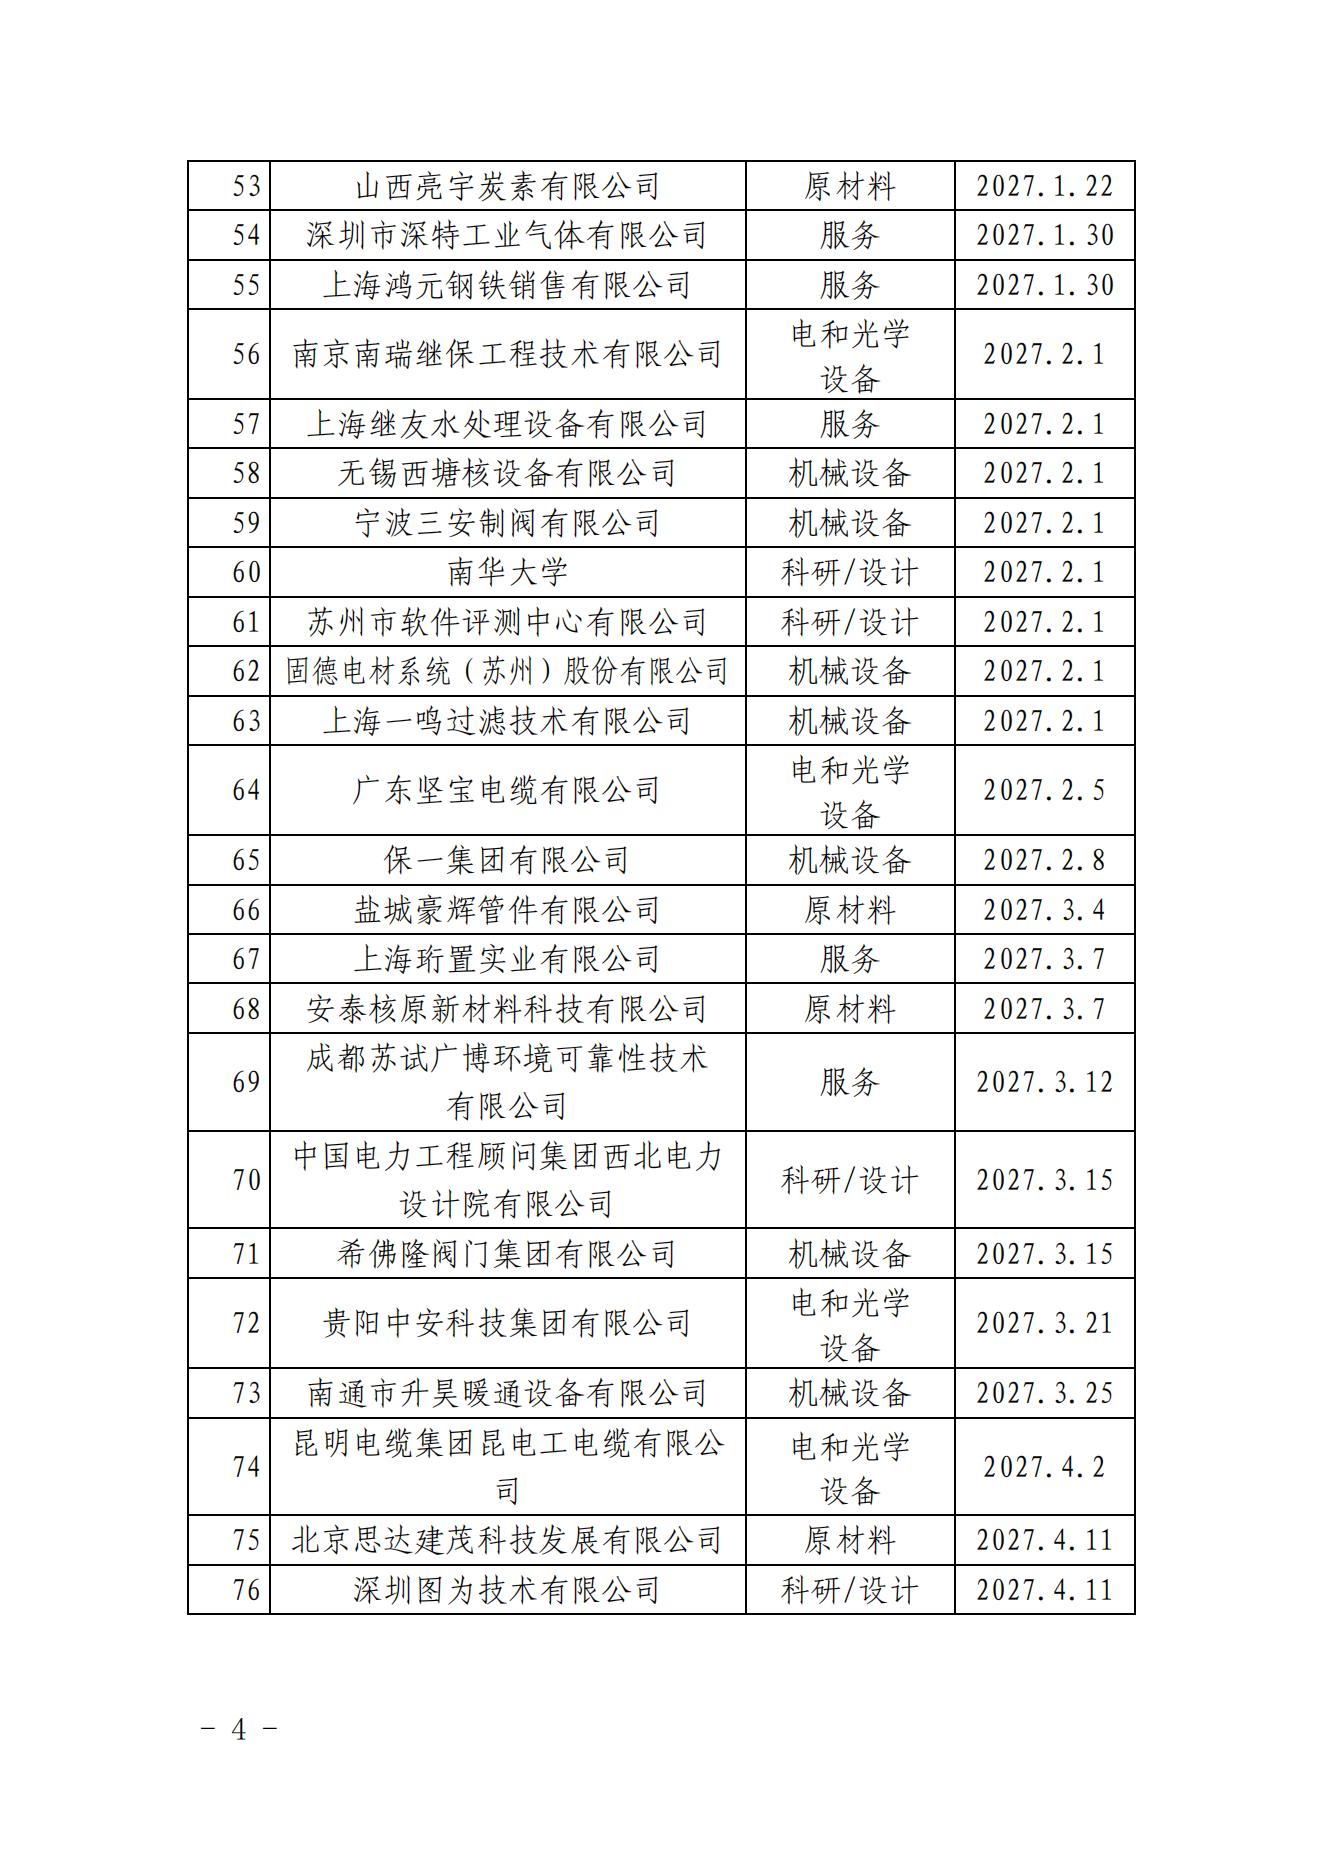 中国核能行业协会关于发布第三十批核能行业合格供应商名录的公告_03.jpg